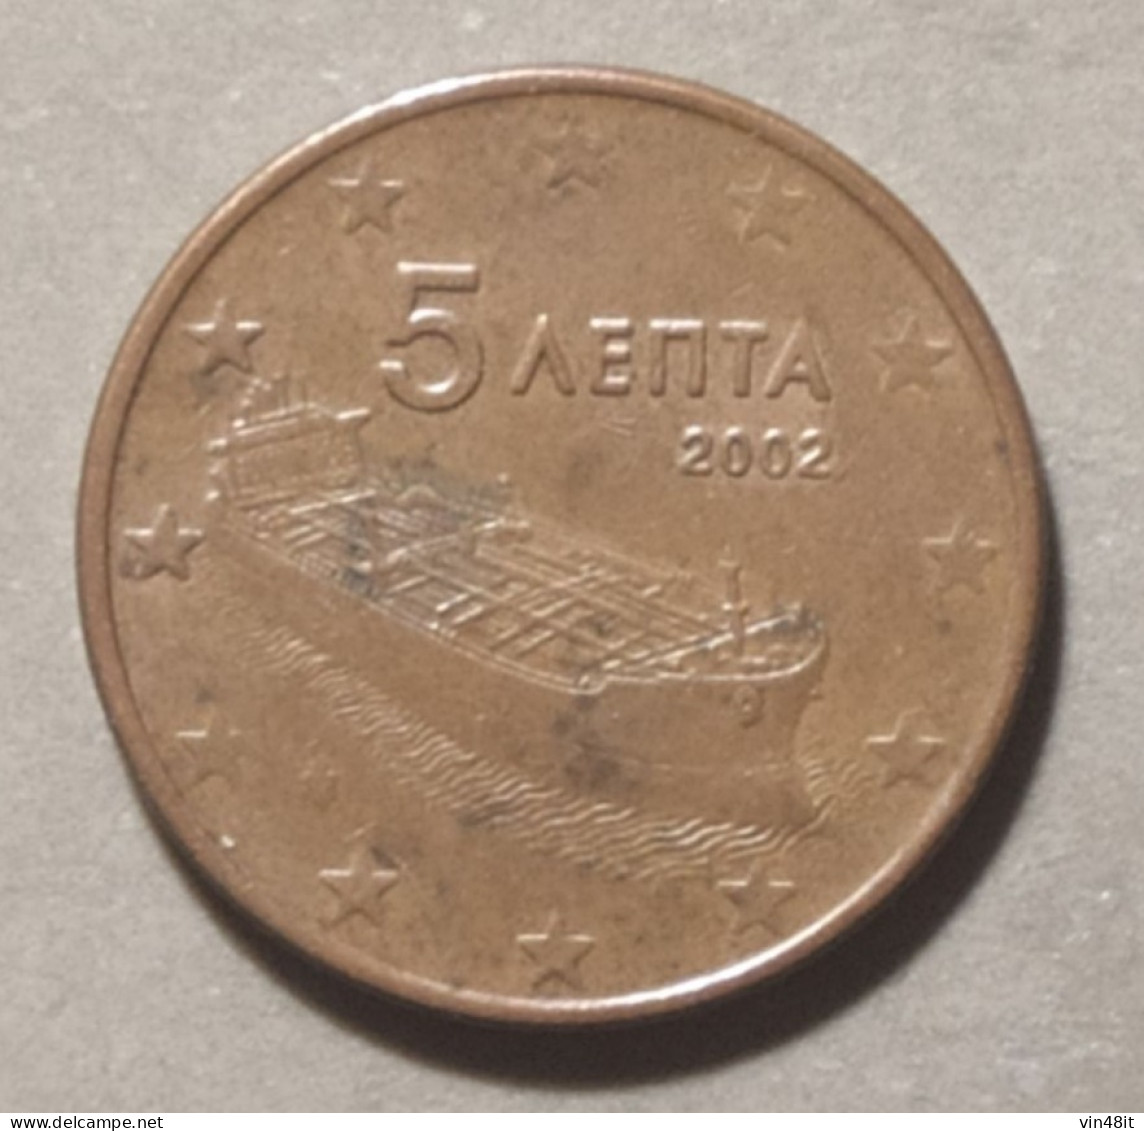 2002  -  GRECIA - MONETA IN EURO - DEL VALORE  DI  5  CENTESIMI - USATA - Grecia